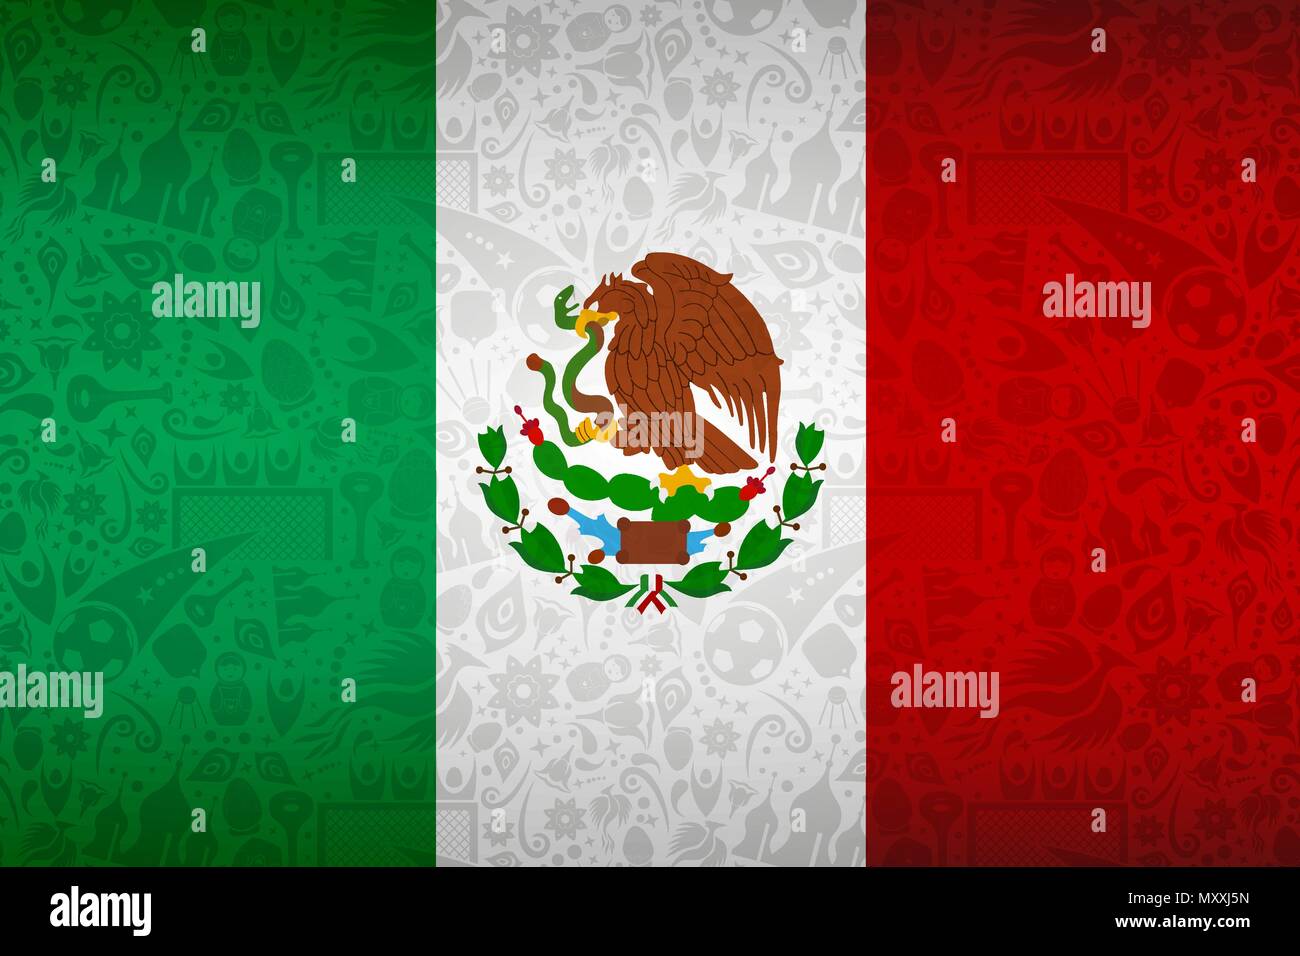 Mexiko Flagge Hintergrund für besondere Fußball-Sport Ereignis. Mit russischen Stil Ikonen. EPS 10 Vektor. Stock Vektor